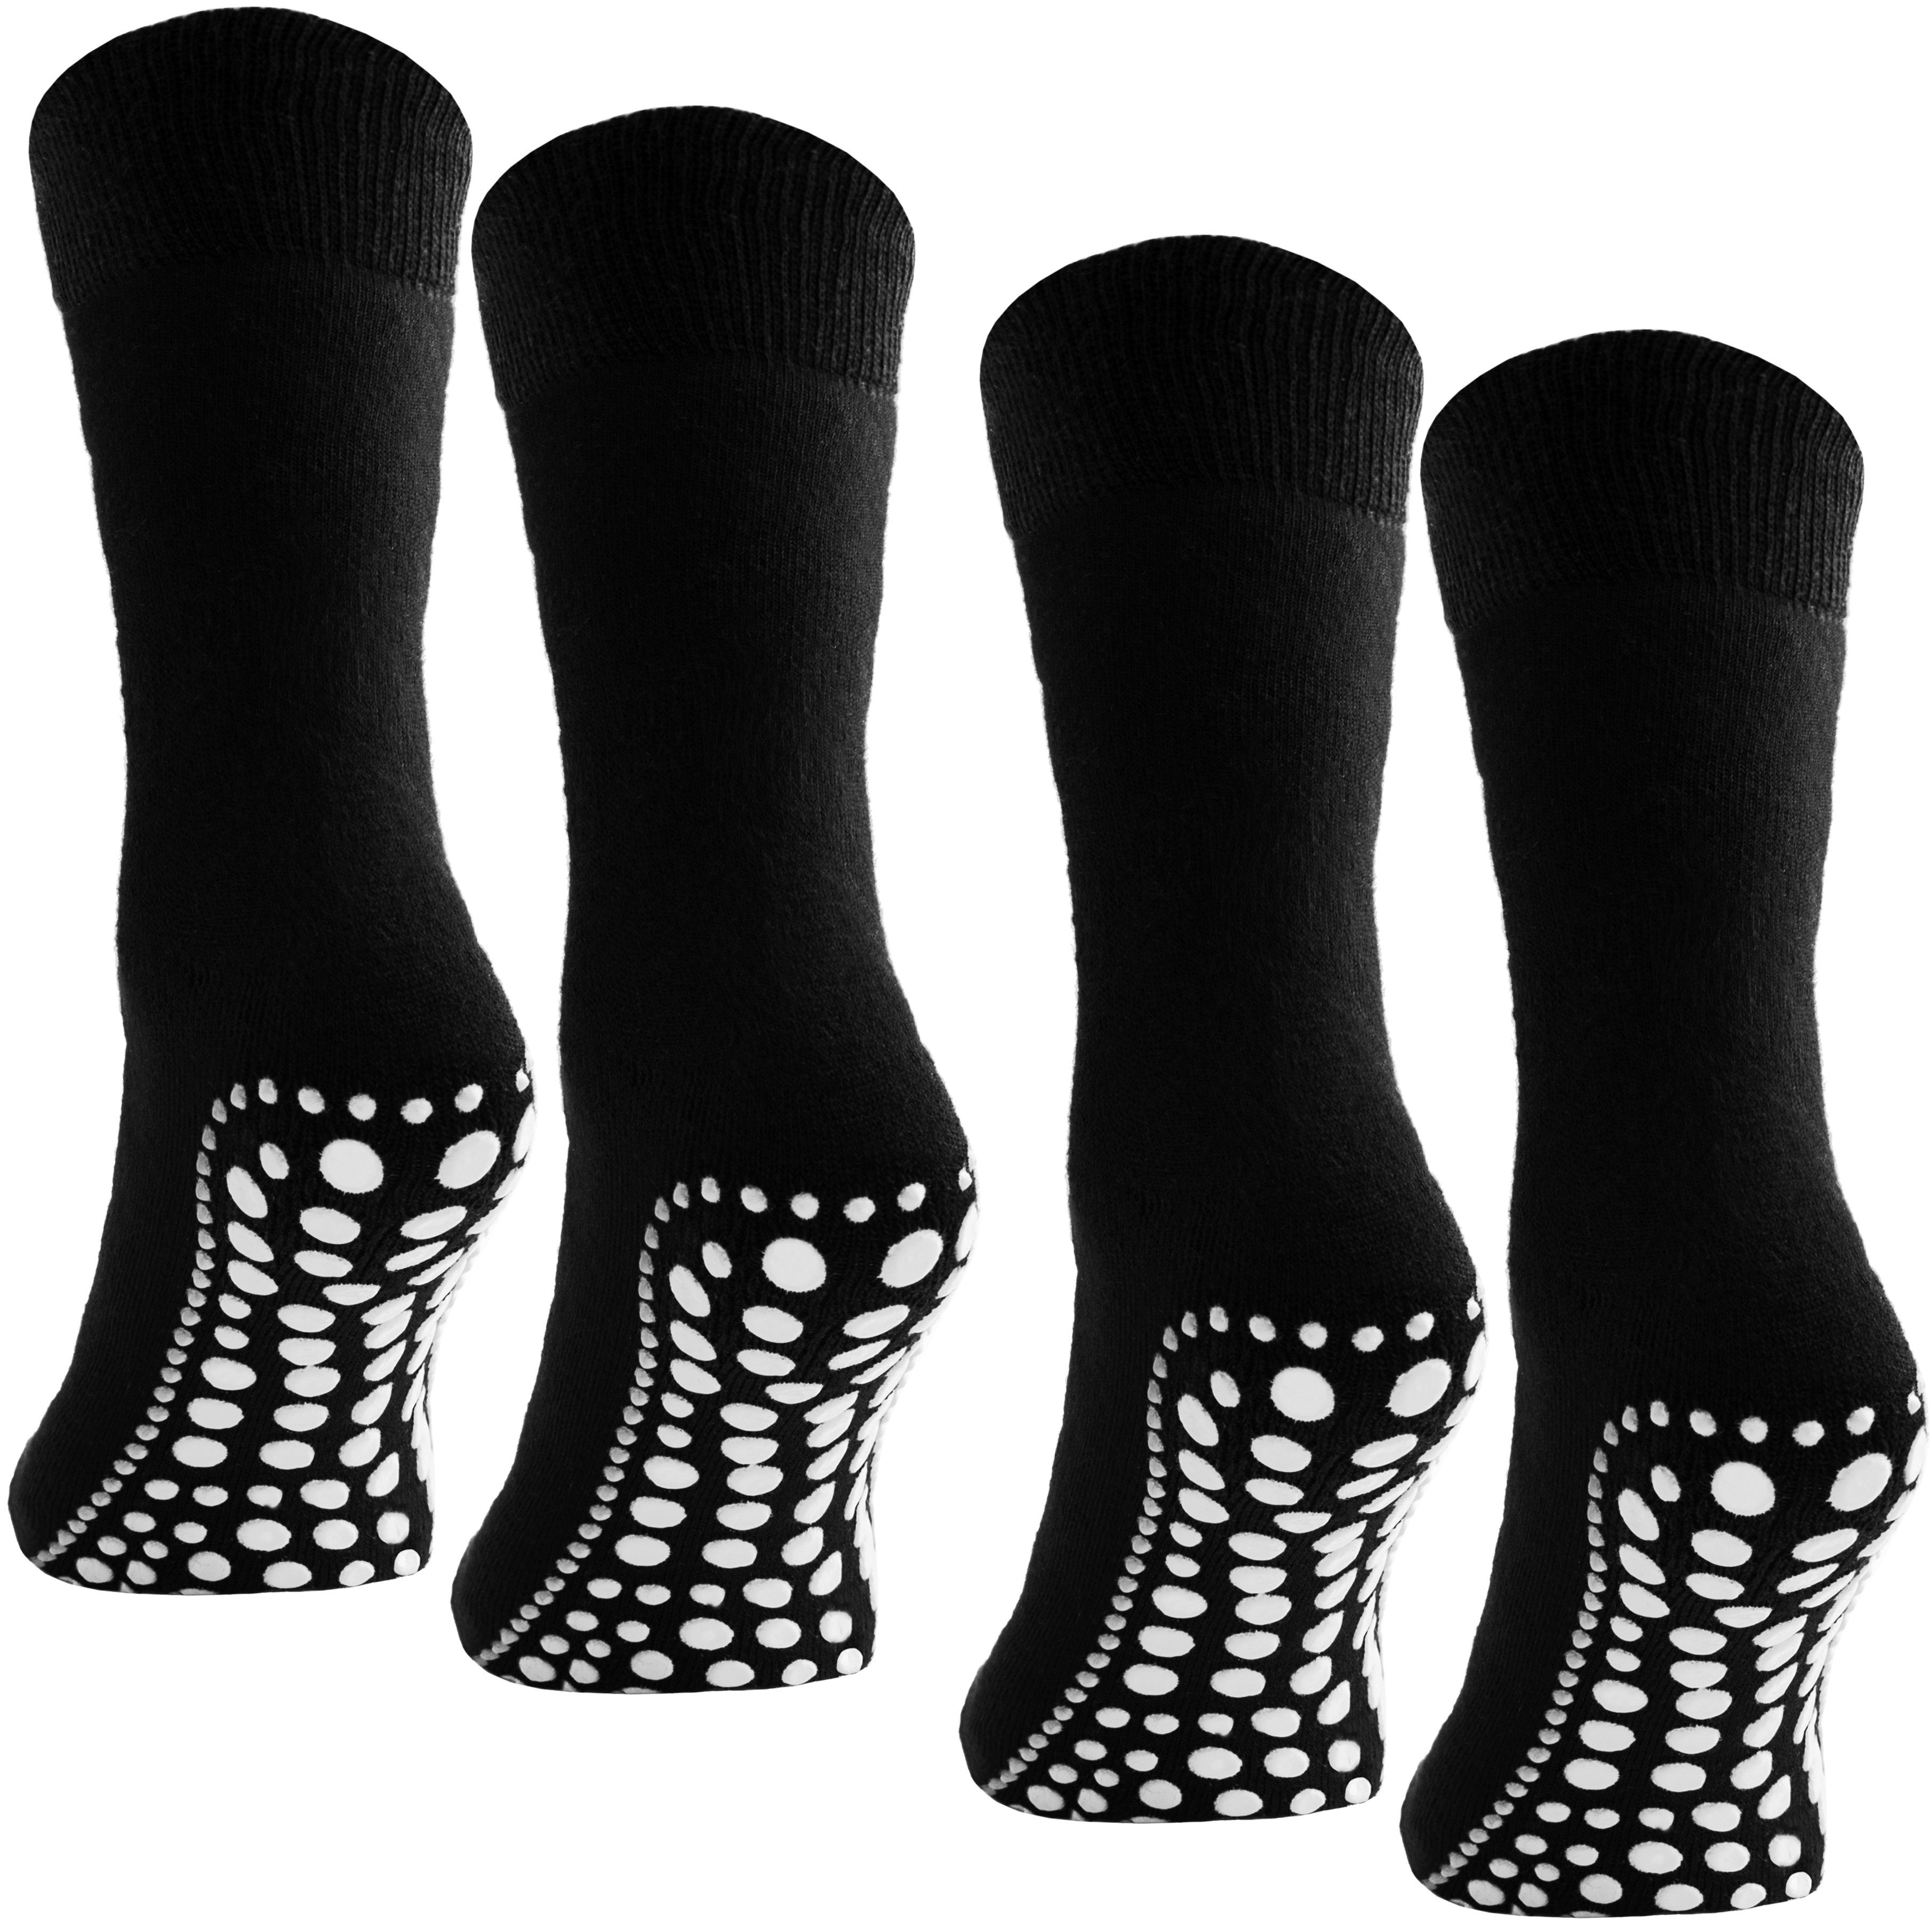 BRUBAKER ABS-Socken Unisex Haussocken (4-Paar, Baumwolle) Anti Rutsch Socken für Damen und Herren Schwarz | Stoppersocken